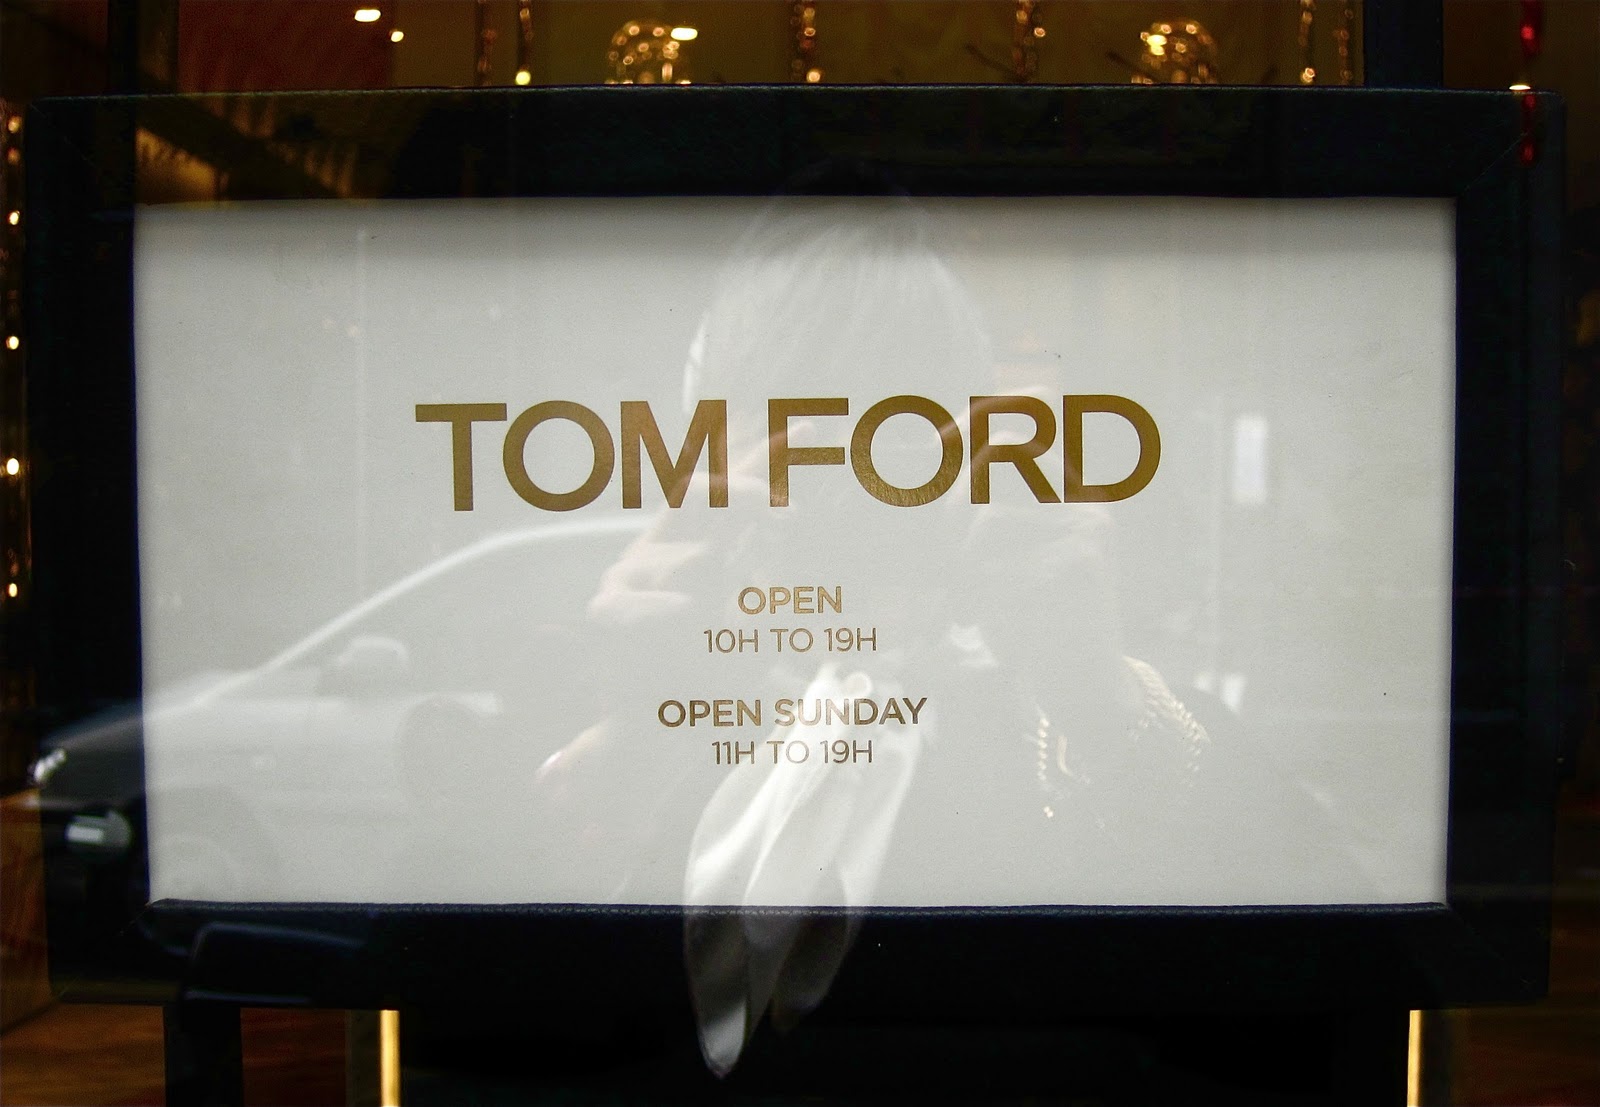 TOM FORD e sua nova loja em NY